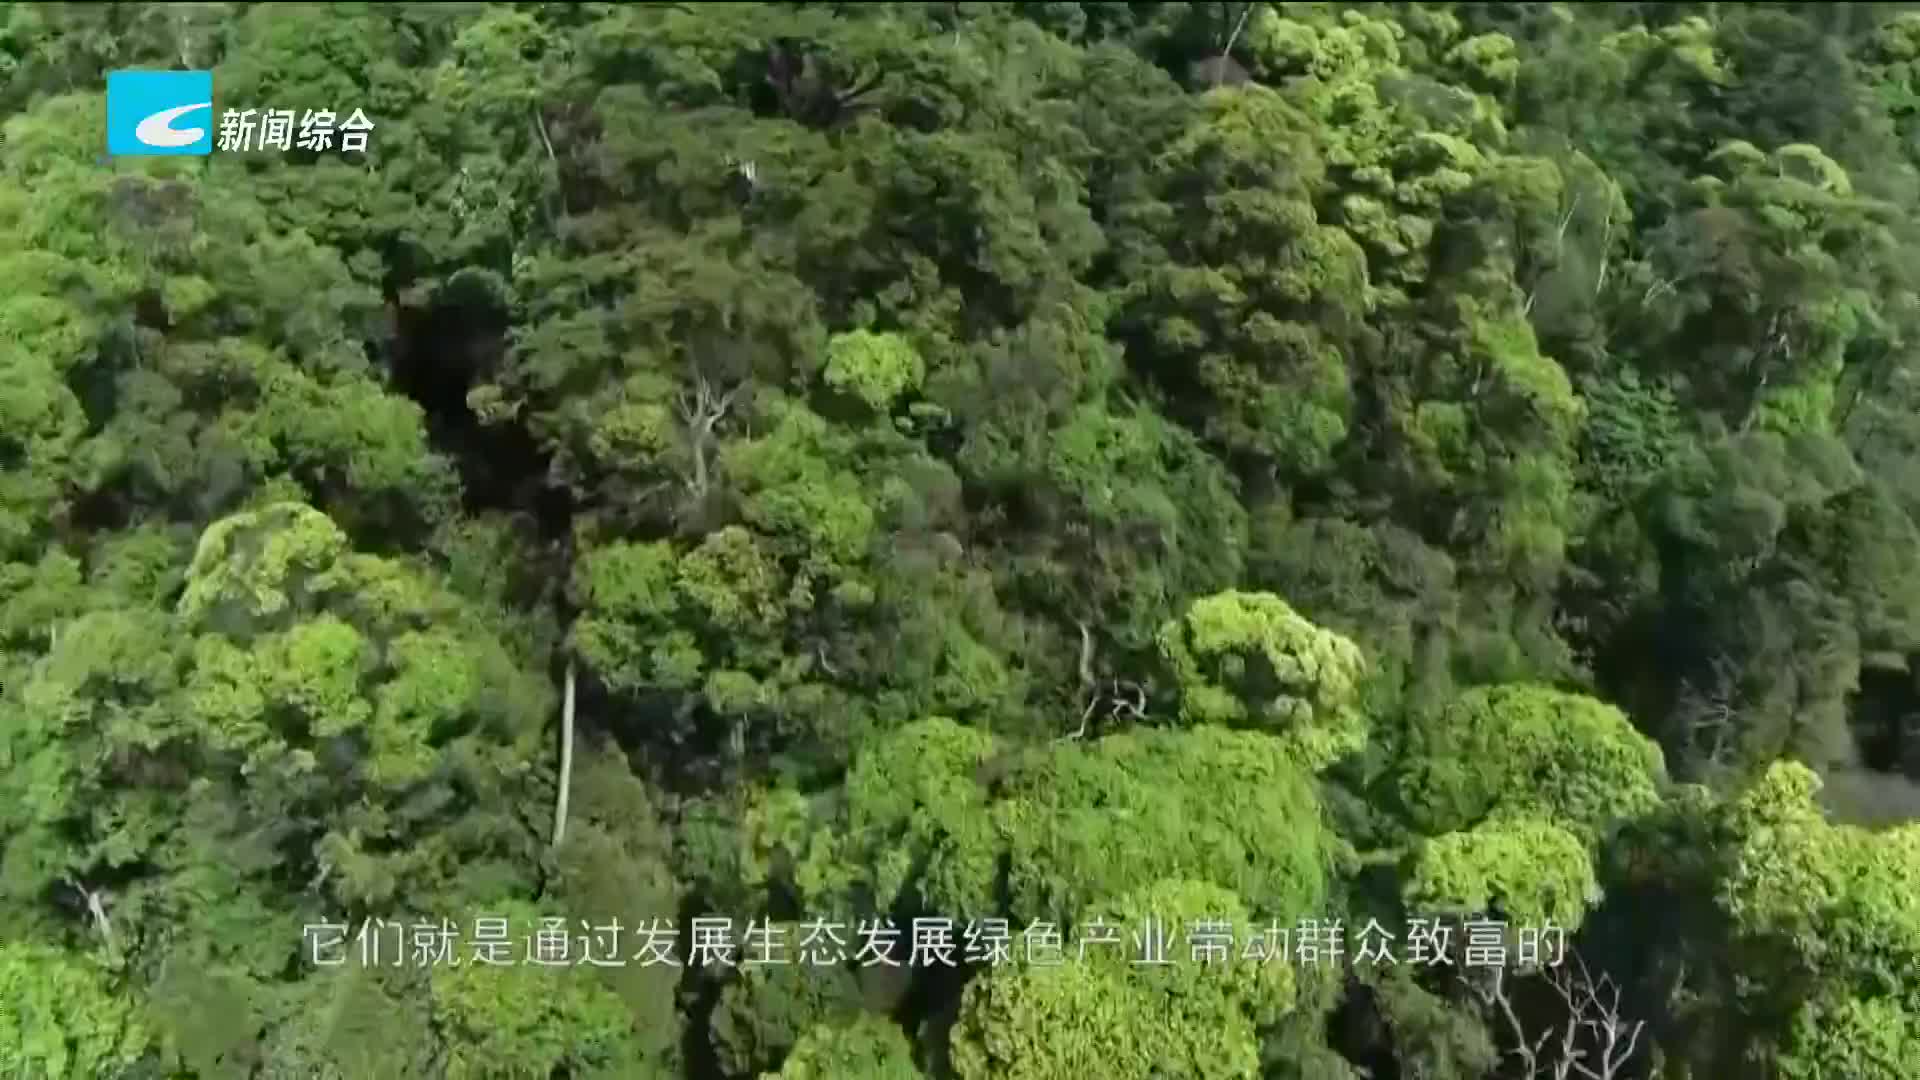 央视《焦点访谈》报道丽水创建钱江源一百山祖国家公园实践案例